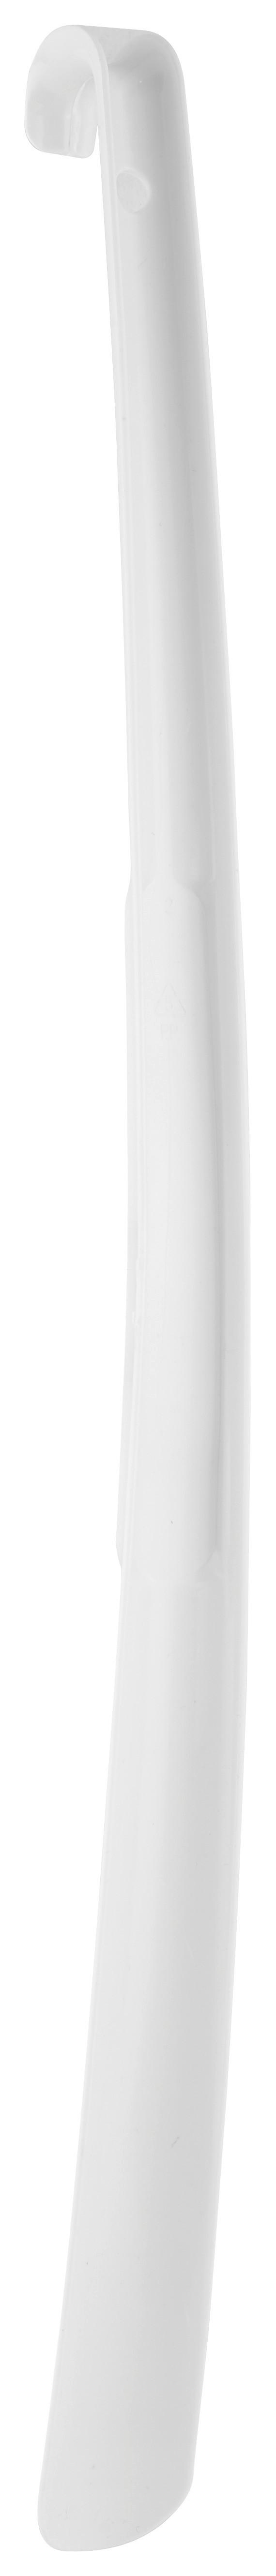 Obouvací Lžíce Steve Xl -Ext- -Kma- - bílá/antracitová, plast (4,3/64cm) - Modern Living